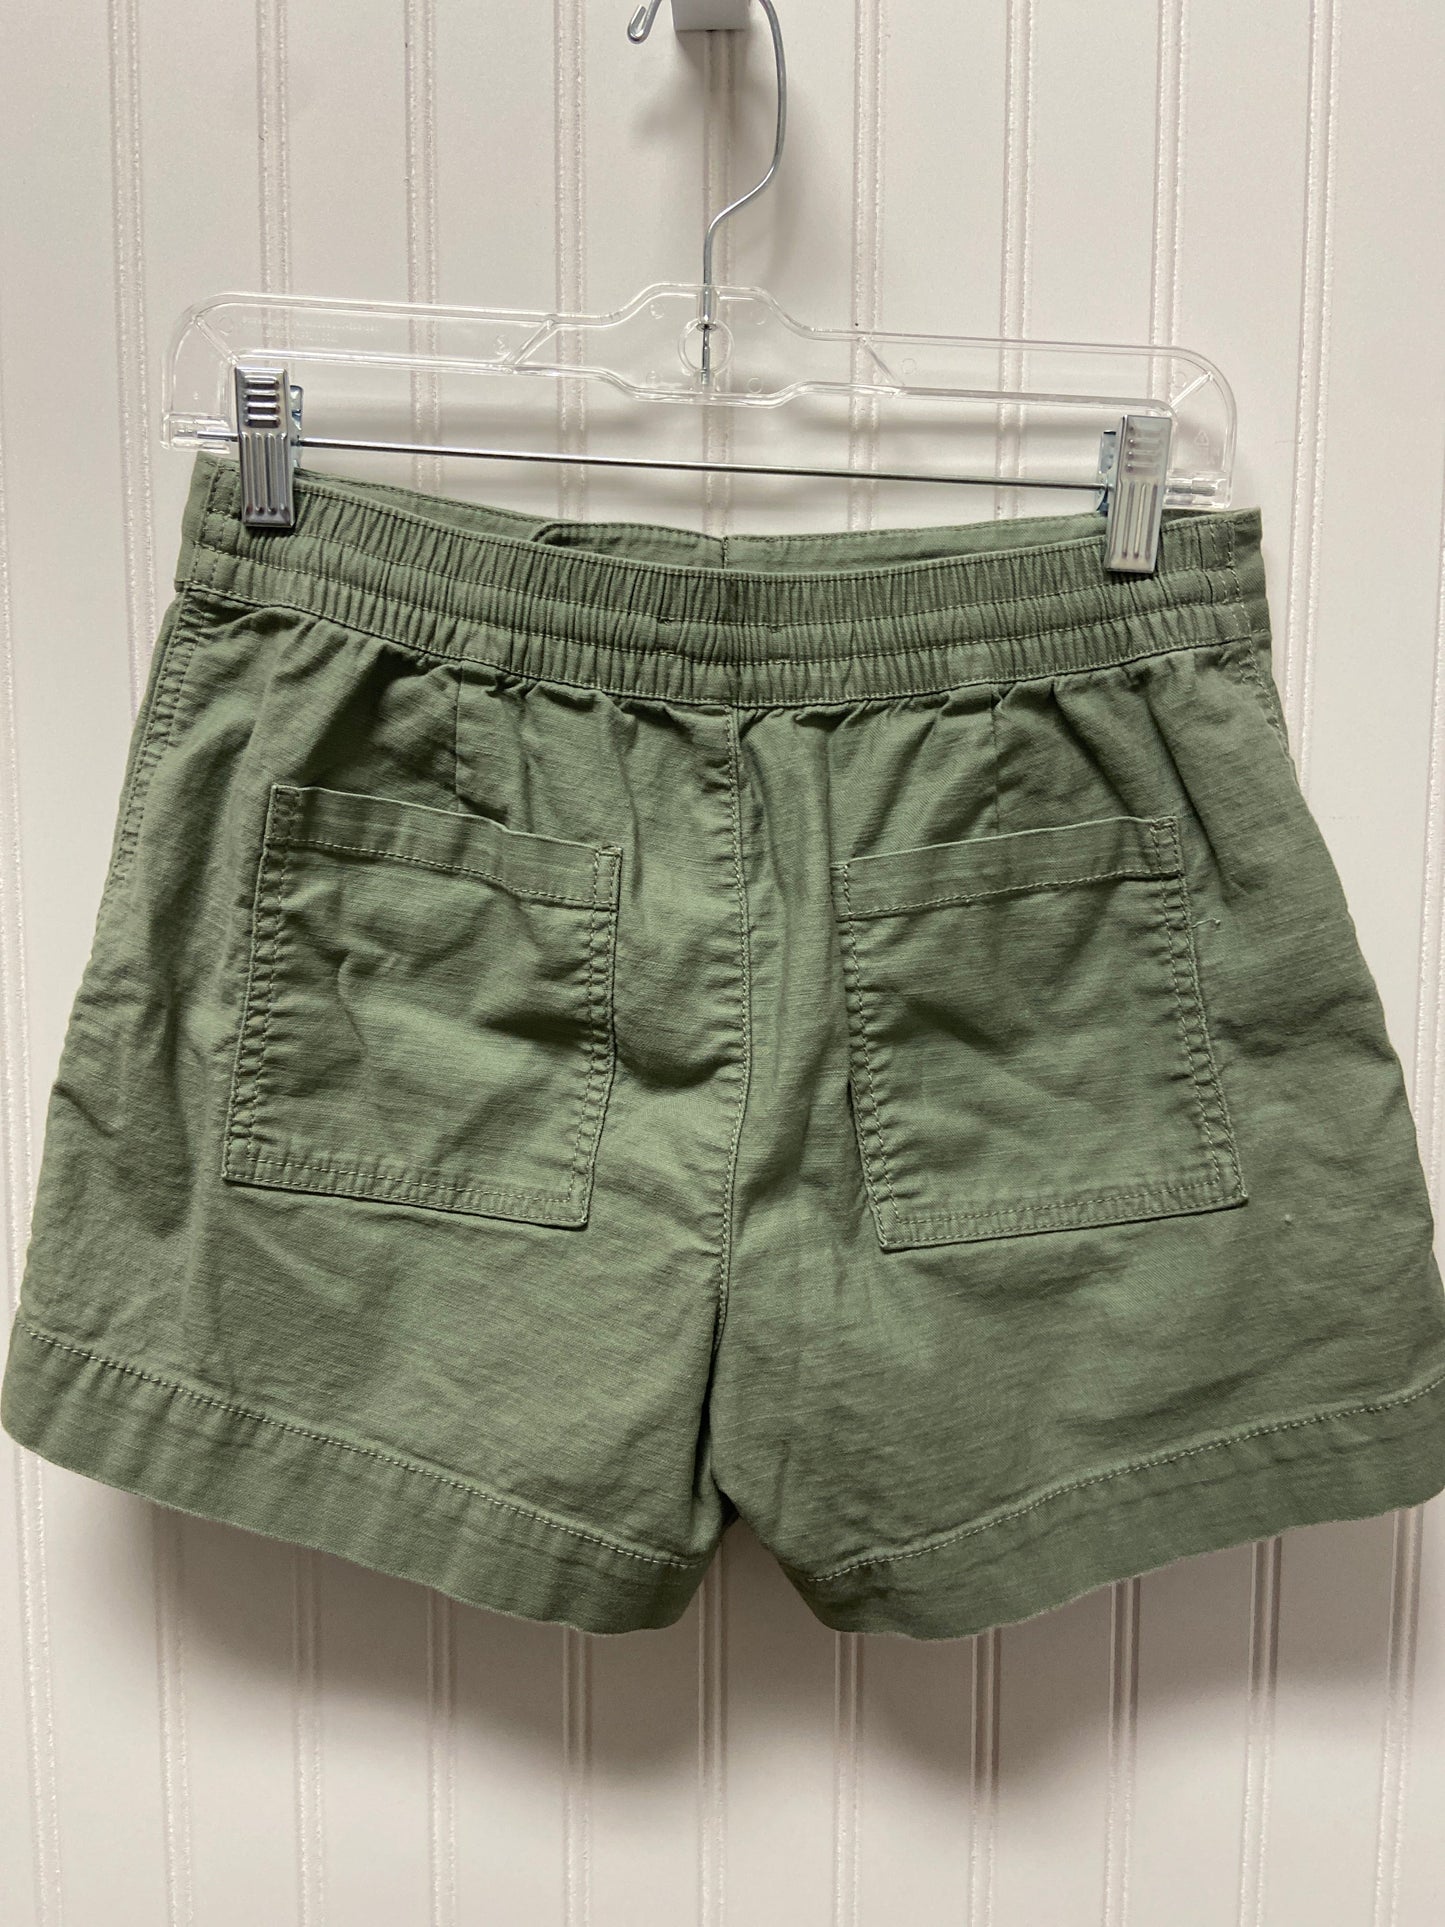 Green Shorts Loft, Size 2